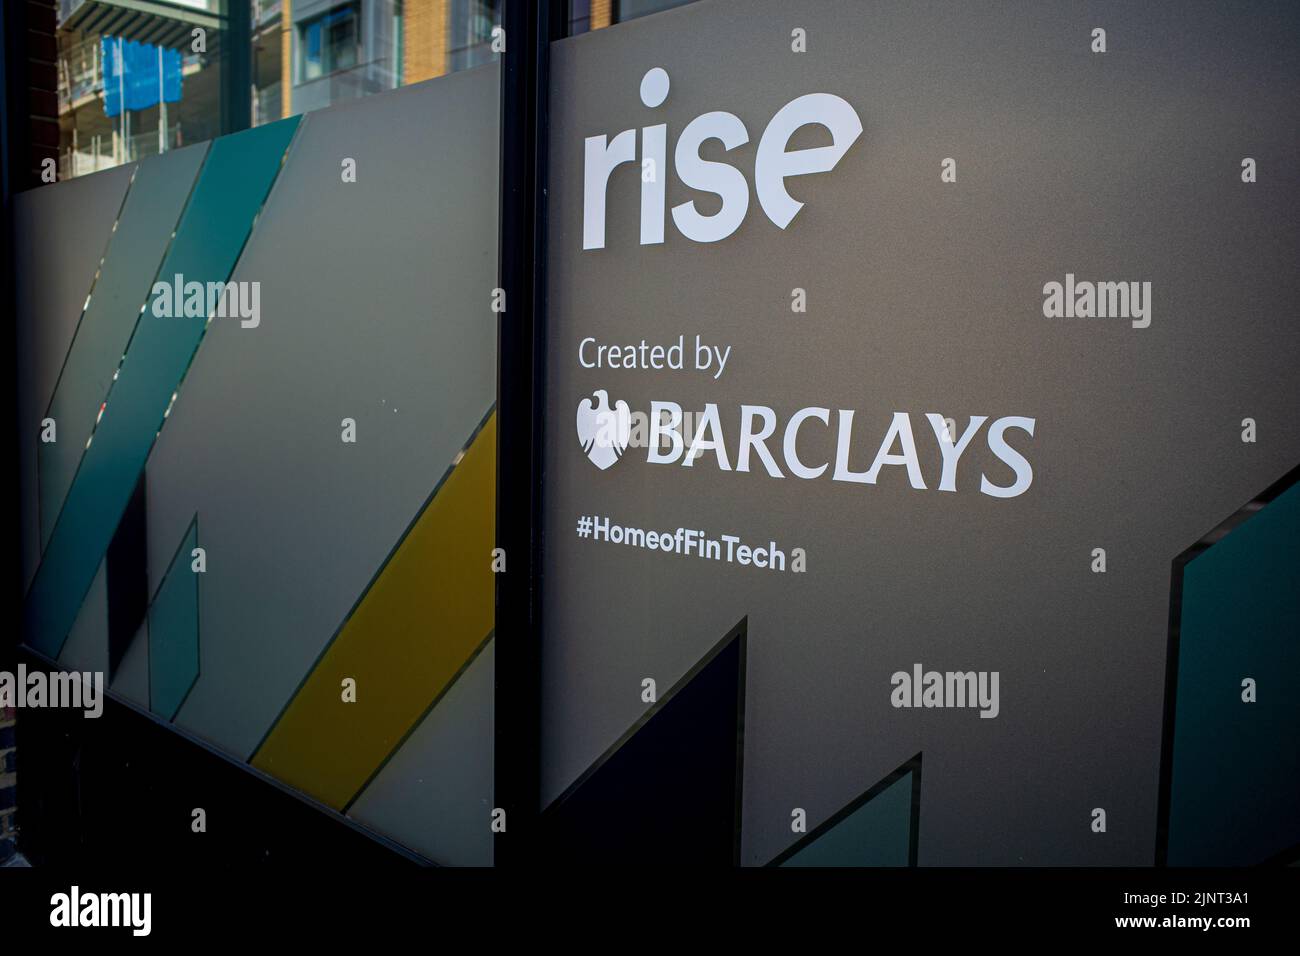 STEIGEN SIE in Shoreditch in London auf. London Fintech. Das Barclays RISE-Programm bringt Fintech-Startups aus der ganzen Welt bei 41 Luke St Shoreditch zusammen. Stockfoto